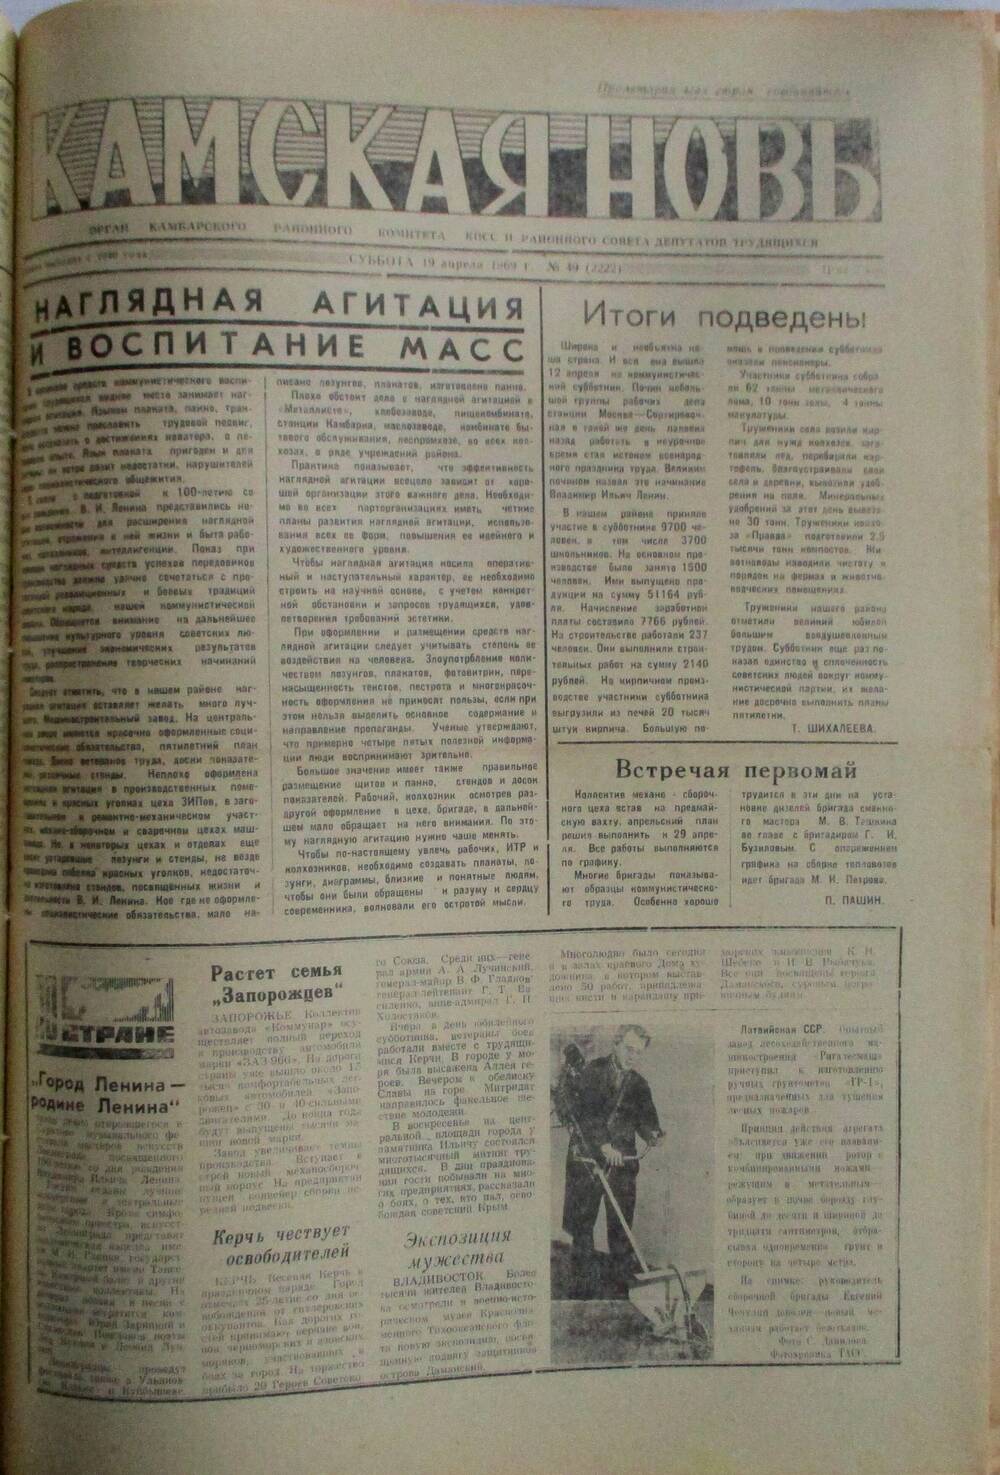 Газеты Камская новь за 1969 год, орган Камбарского райсовета и  РККПСС, с №1 по №66, с №68 по №156. №49.